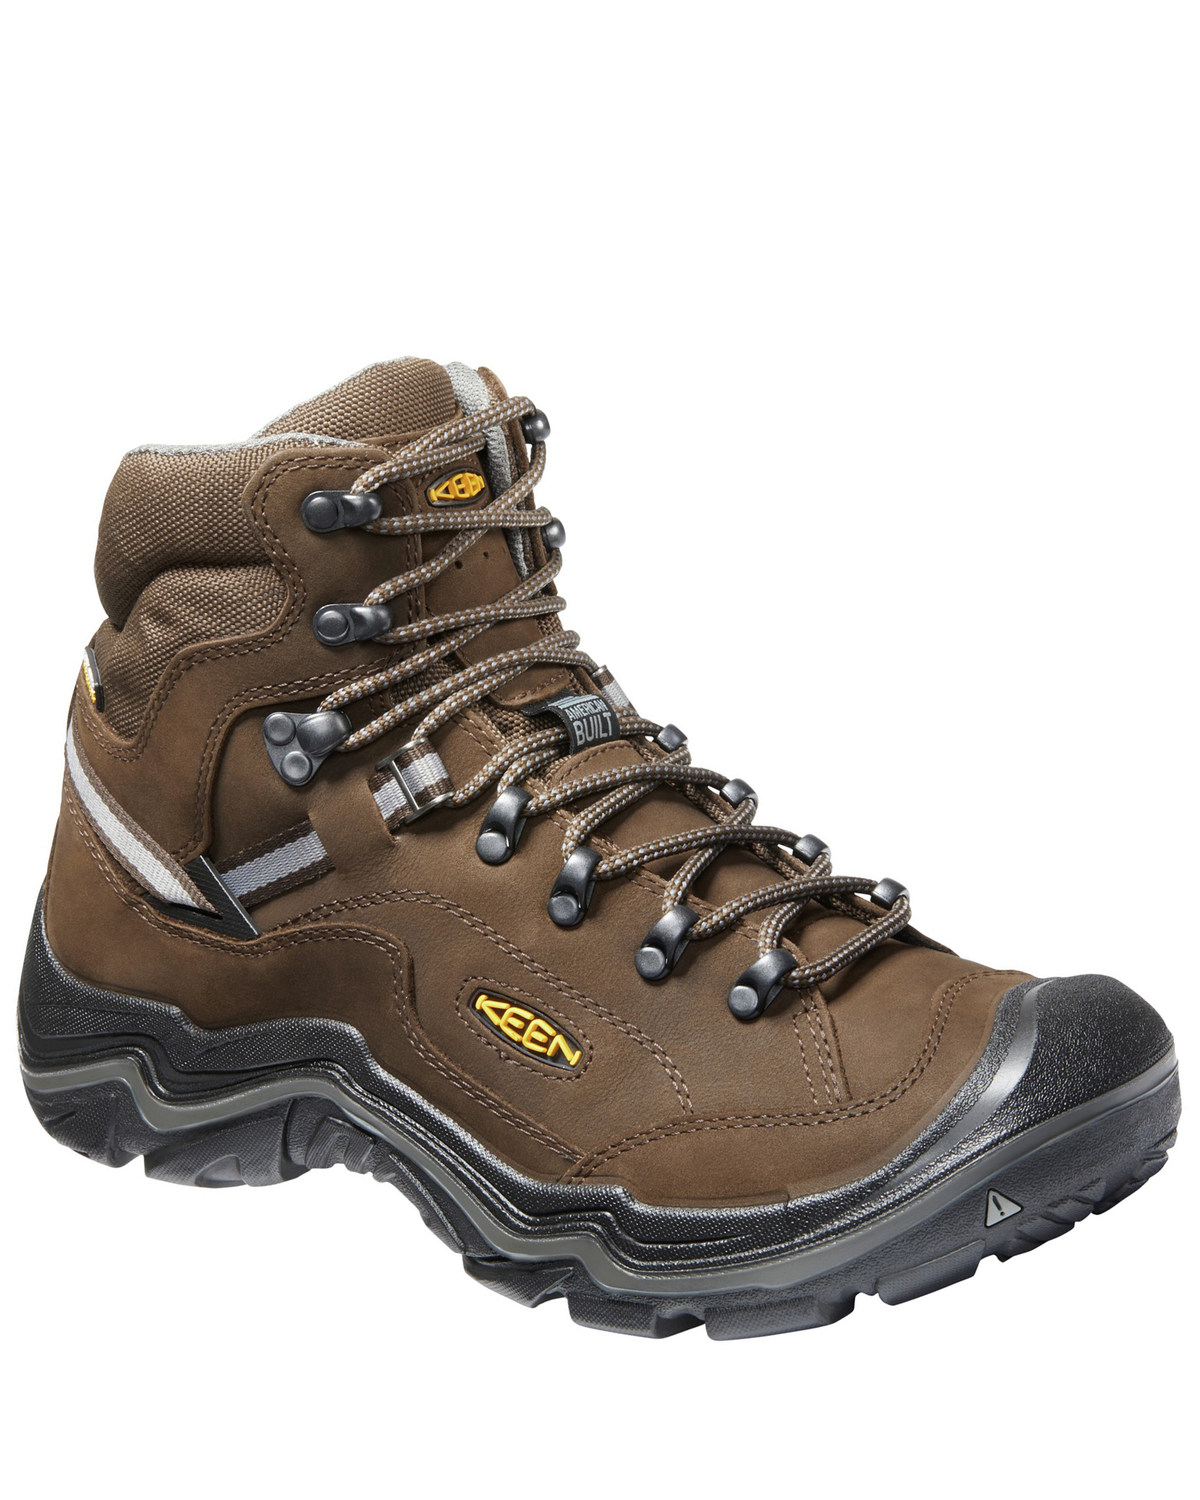 Keen Men's Durand II Waterproof Work Boots - Soft Toe